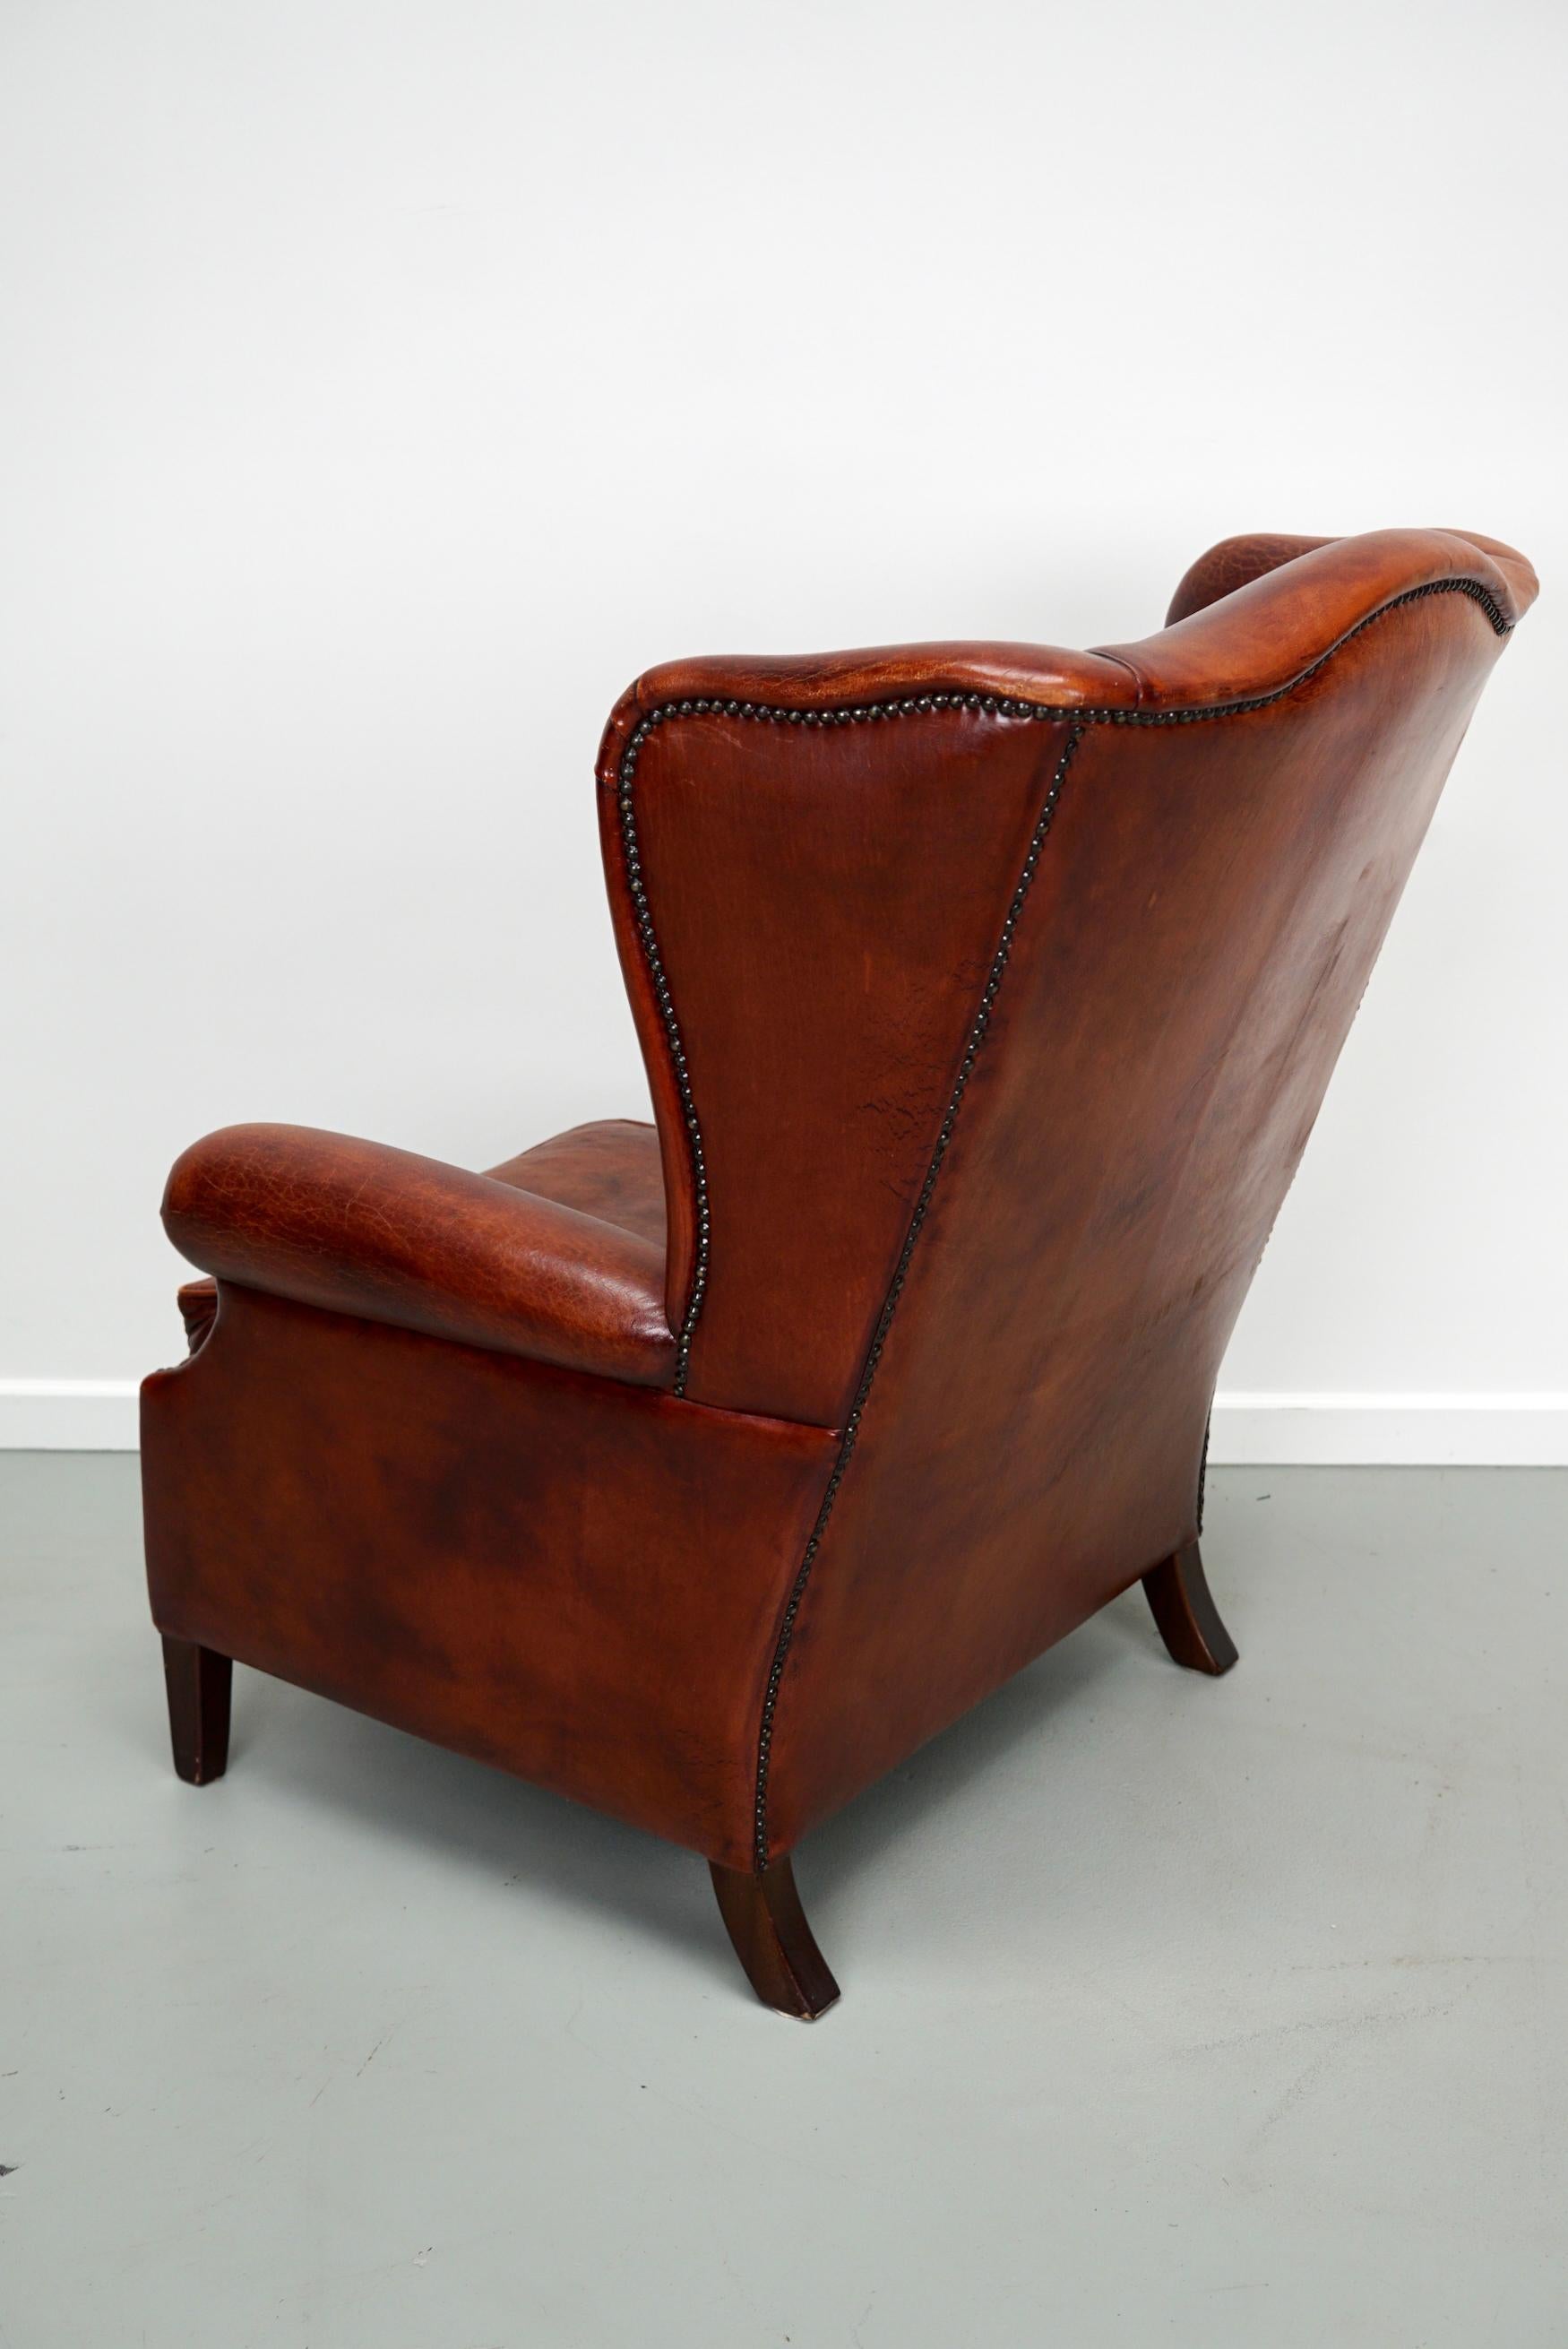 Ce fauteuil club en cuir de couleur cognac provient des Pays-Bas. Il est recouvert de cuir de couleur cognac et comporte des rivets en métal et des pieds en bois.